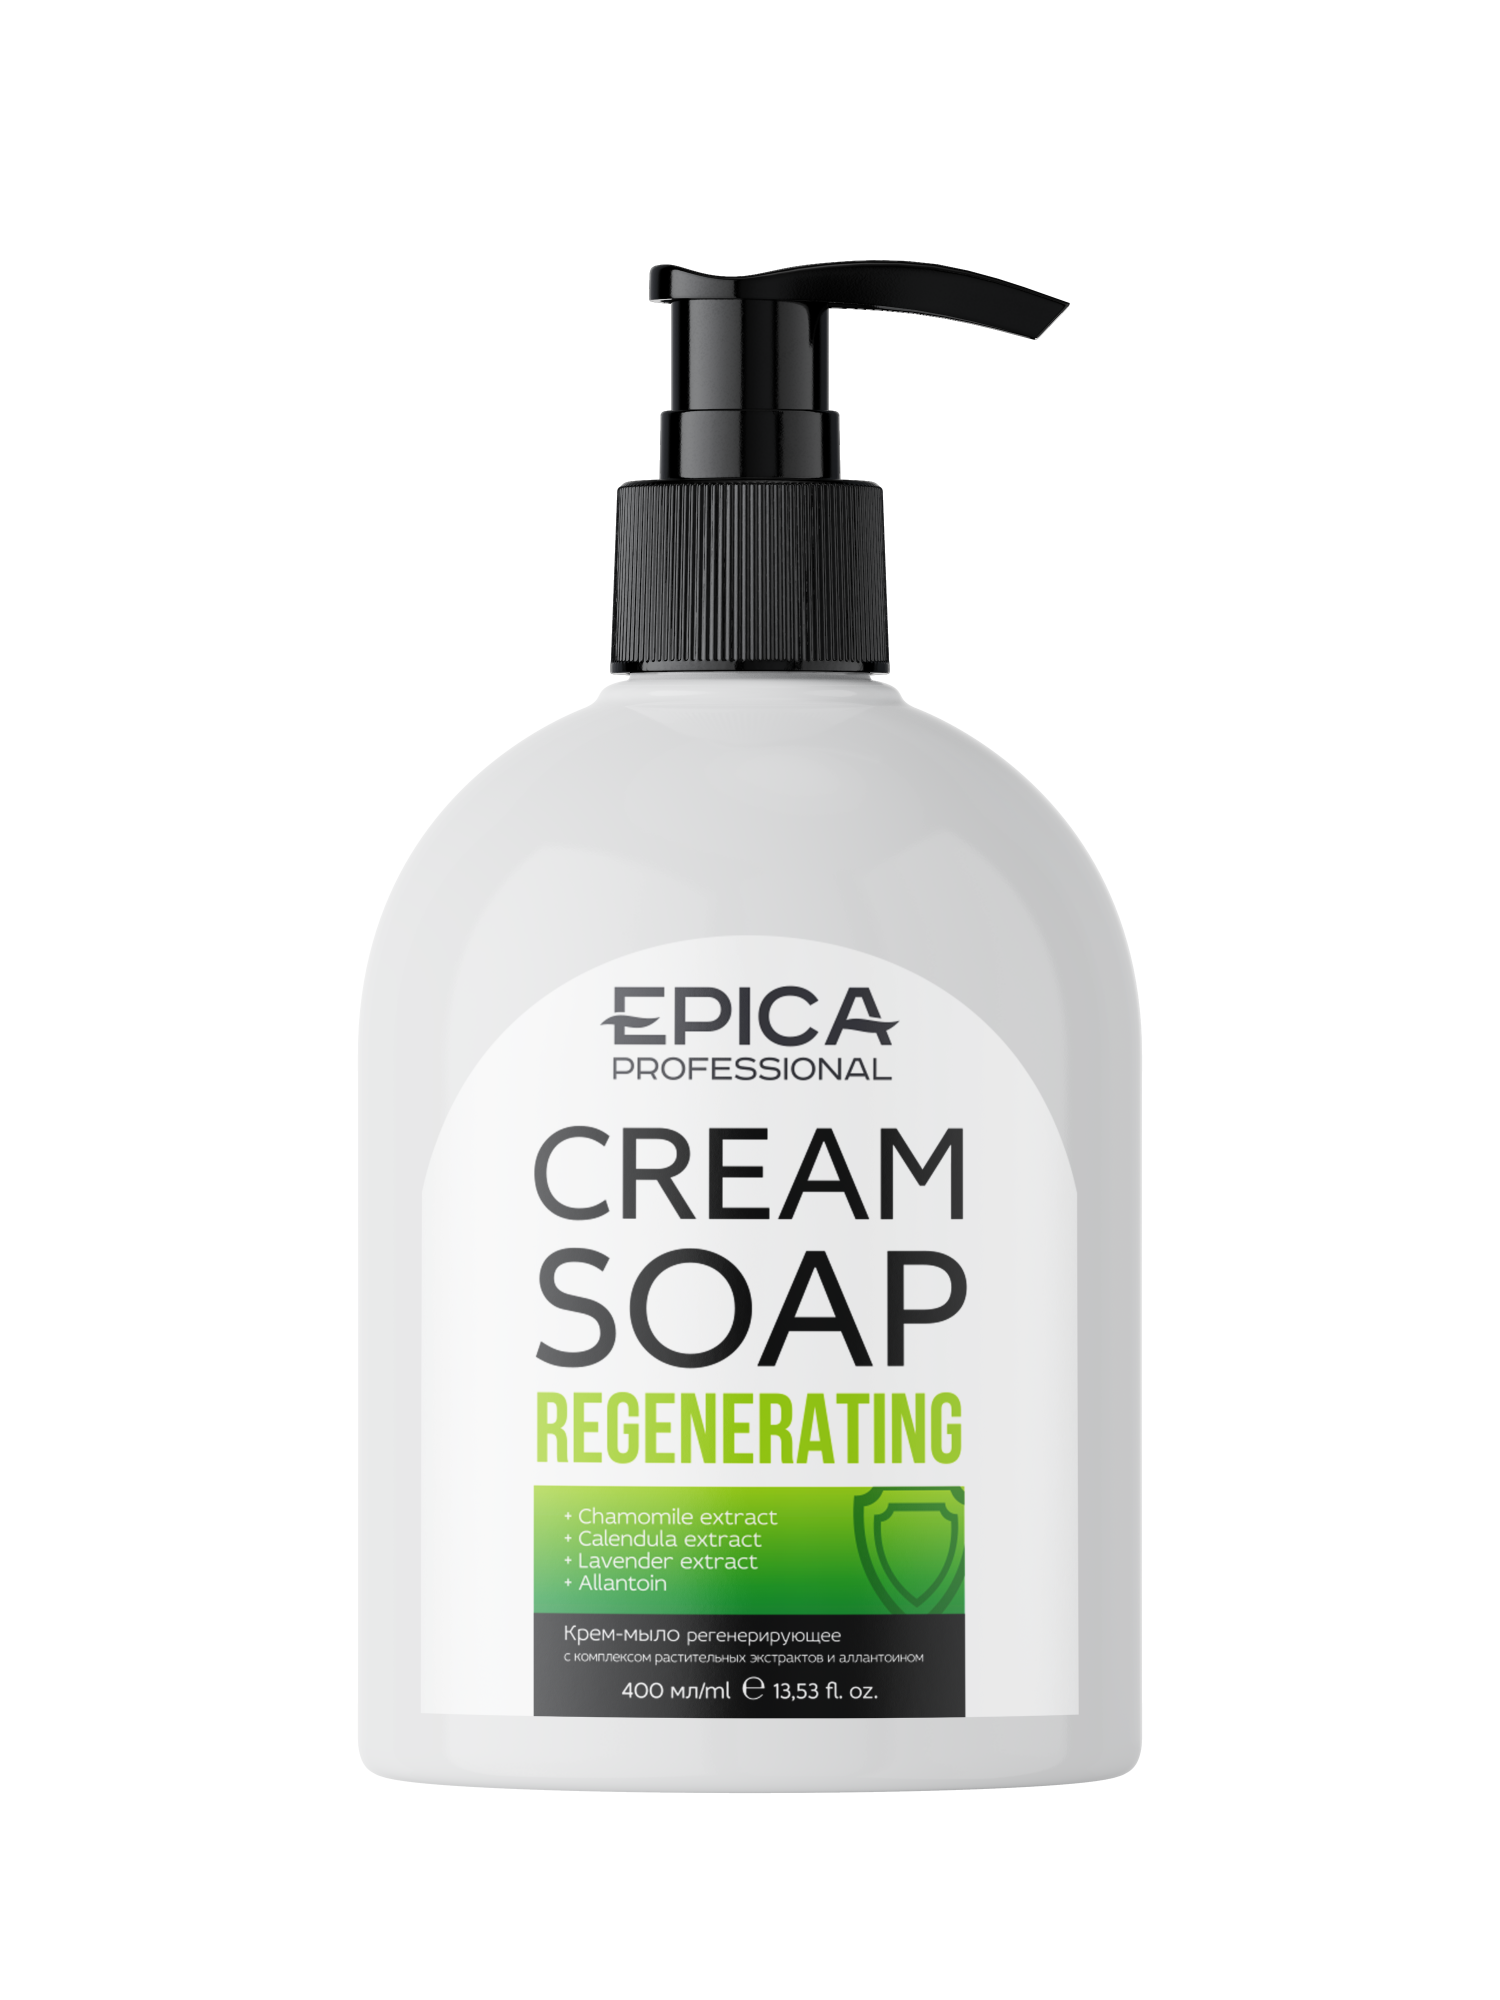 Купить Крем-мыло регенерирующее Epica EPICA Cream Soap Regenerating 400 мл, EPICA Cream Soap Regenerating Крем-мыло регенерирующее с комплексом цветочных экстрактов и аллантоином, 400 мл.